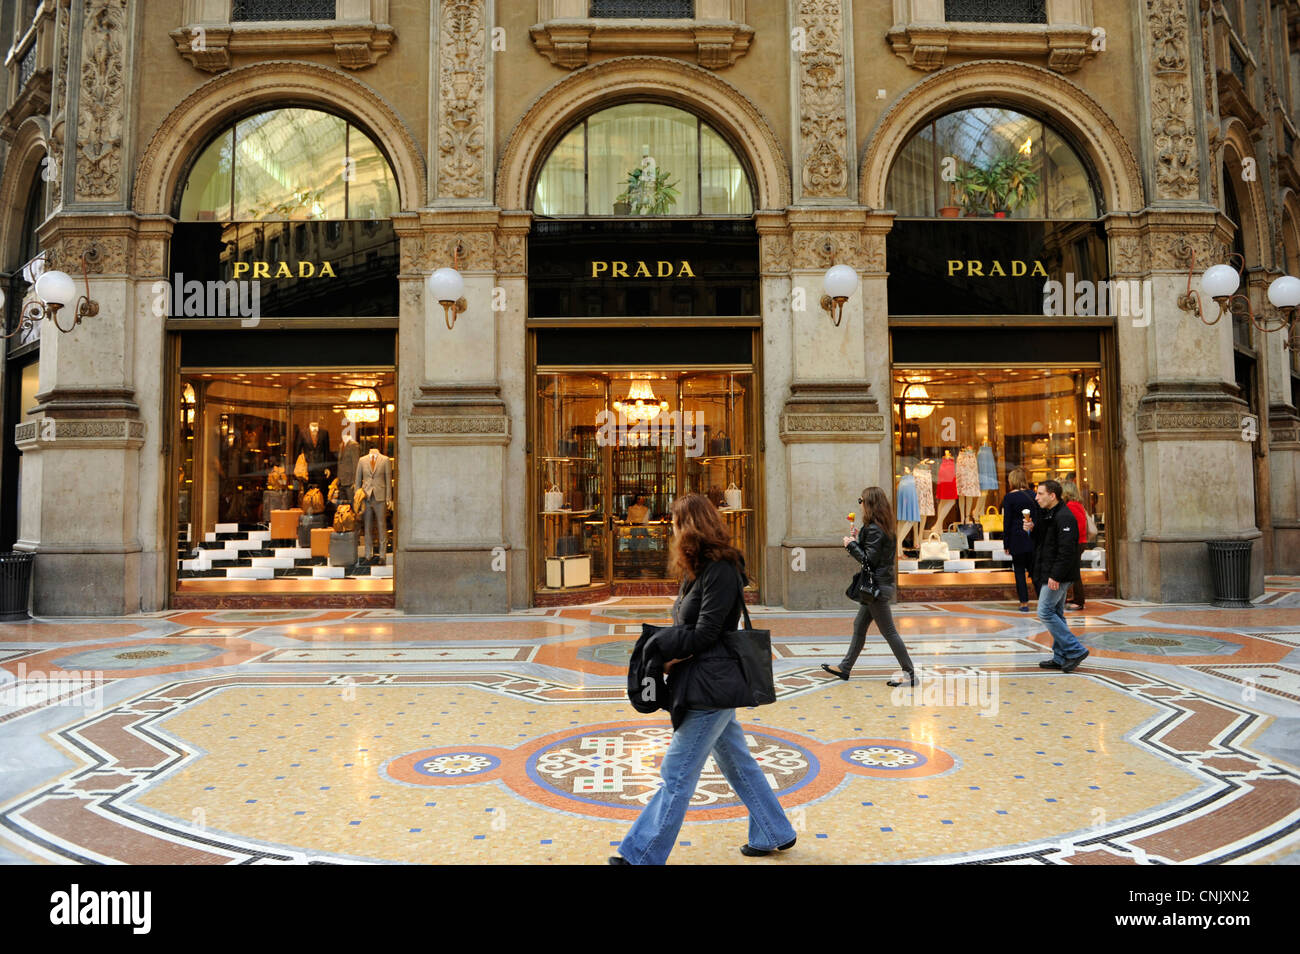 Prada shop. Galleria Vittorio Emanuele II. Milan, Italy Stock